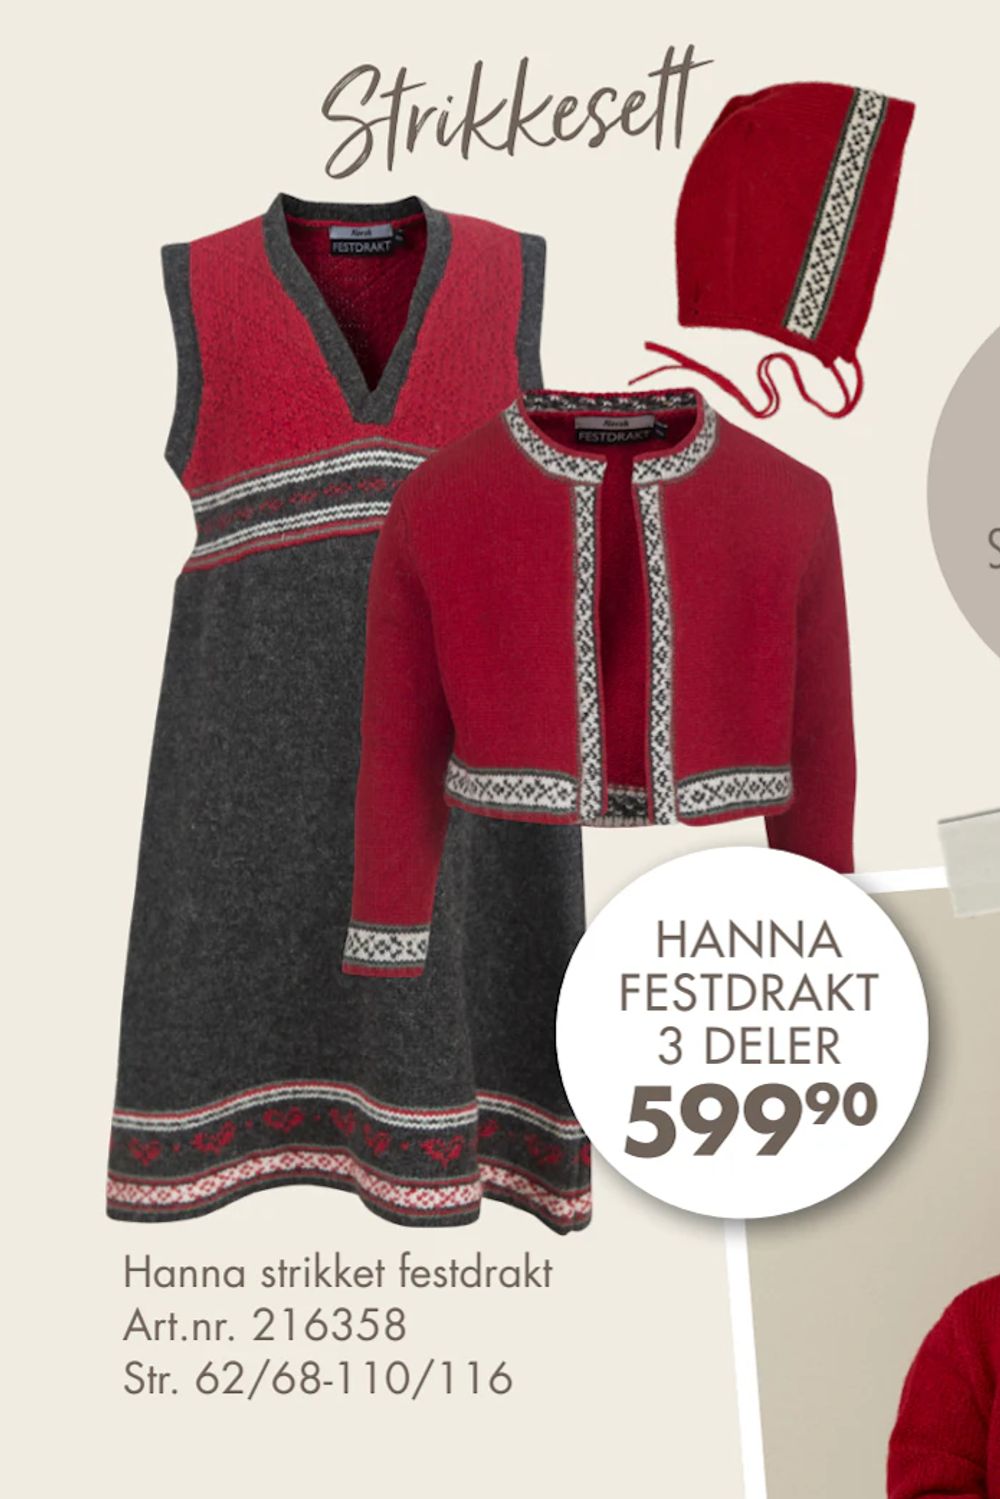 Tilbud på Hanna strikket festdrakt fra Spar Kjøp til 599,90 kr